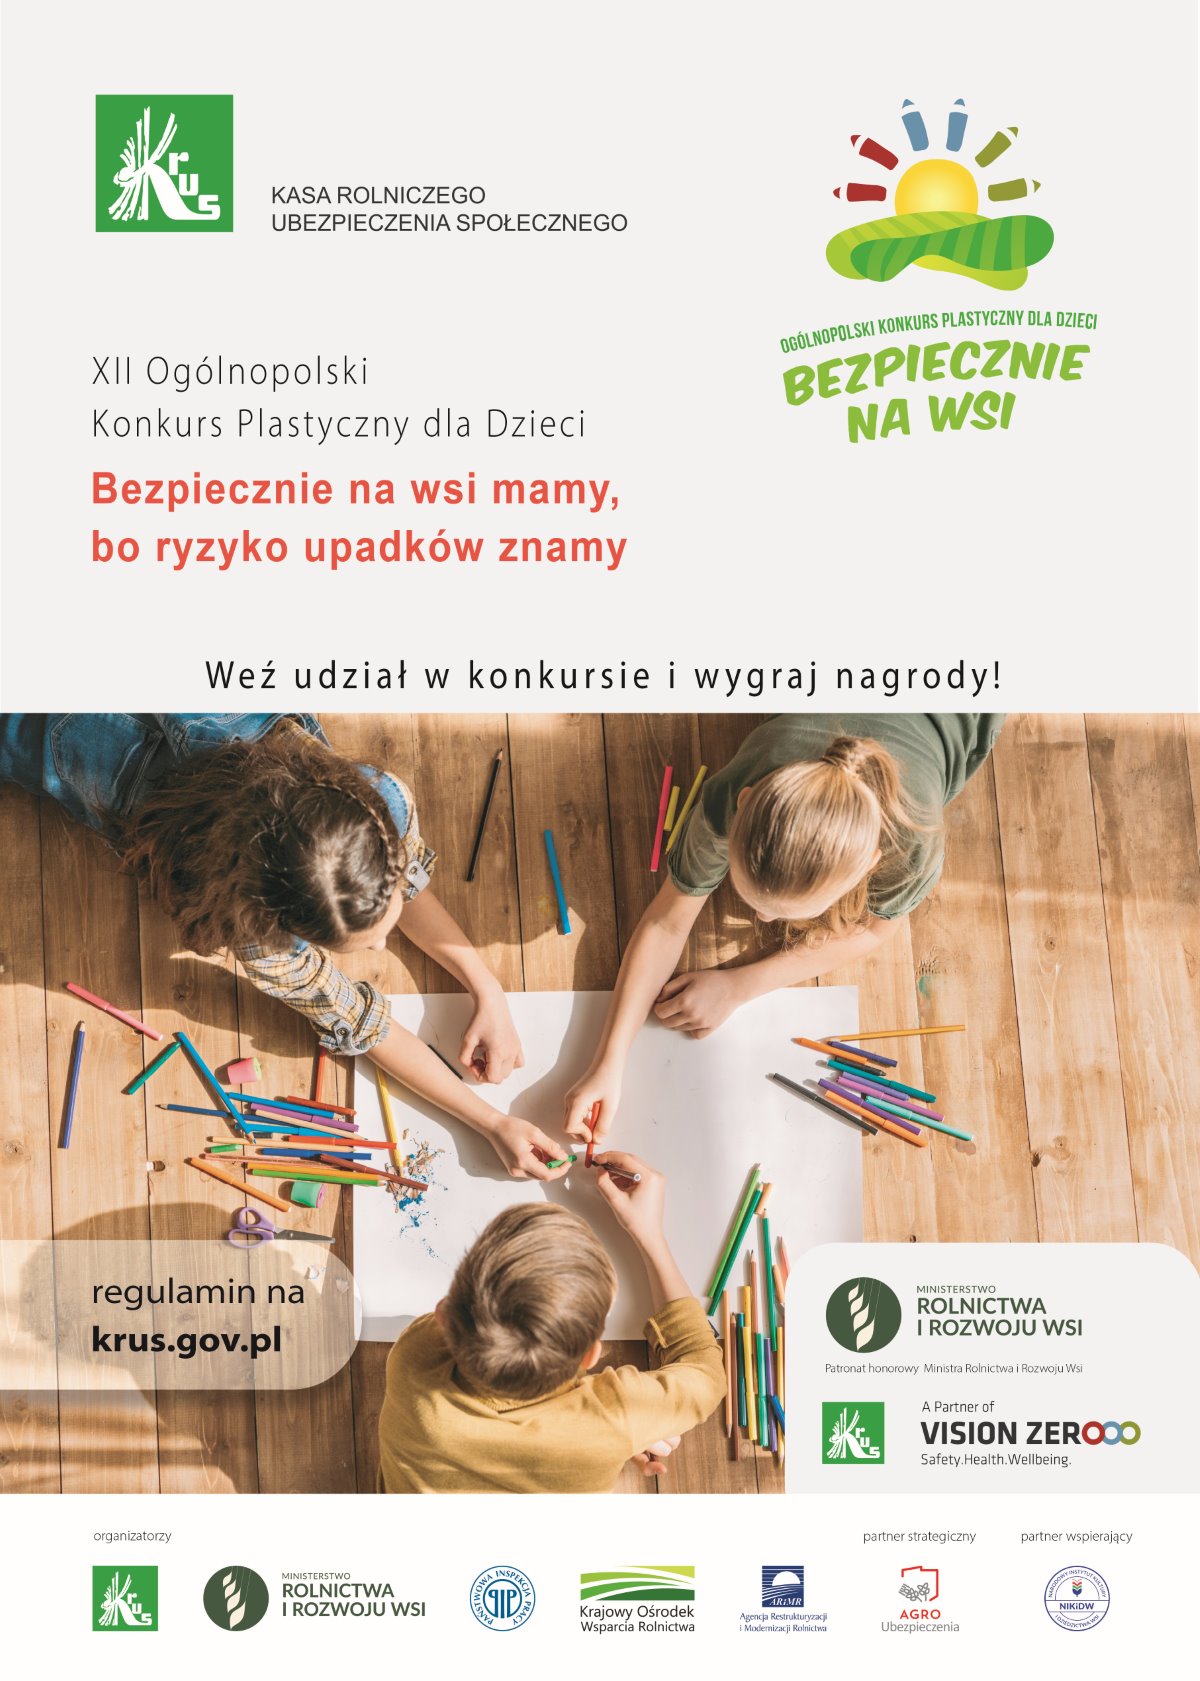 XII Ogólnopolski Konkurs Plastyczny dla Dzieci „Bezpiecznie na wsi mamy, bo ryzyko upadków znamy”